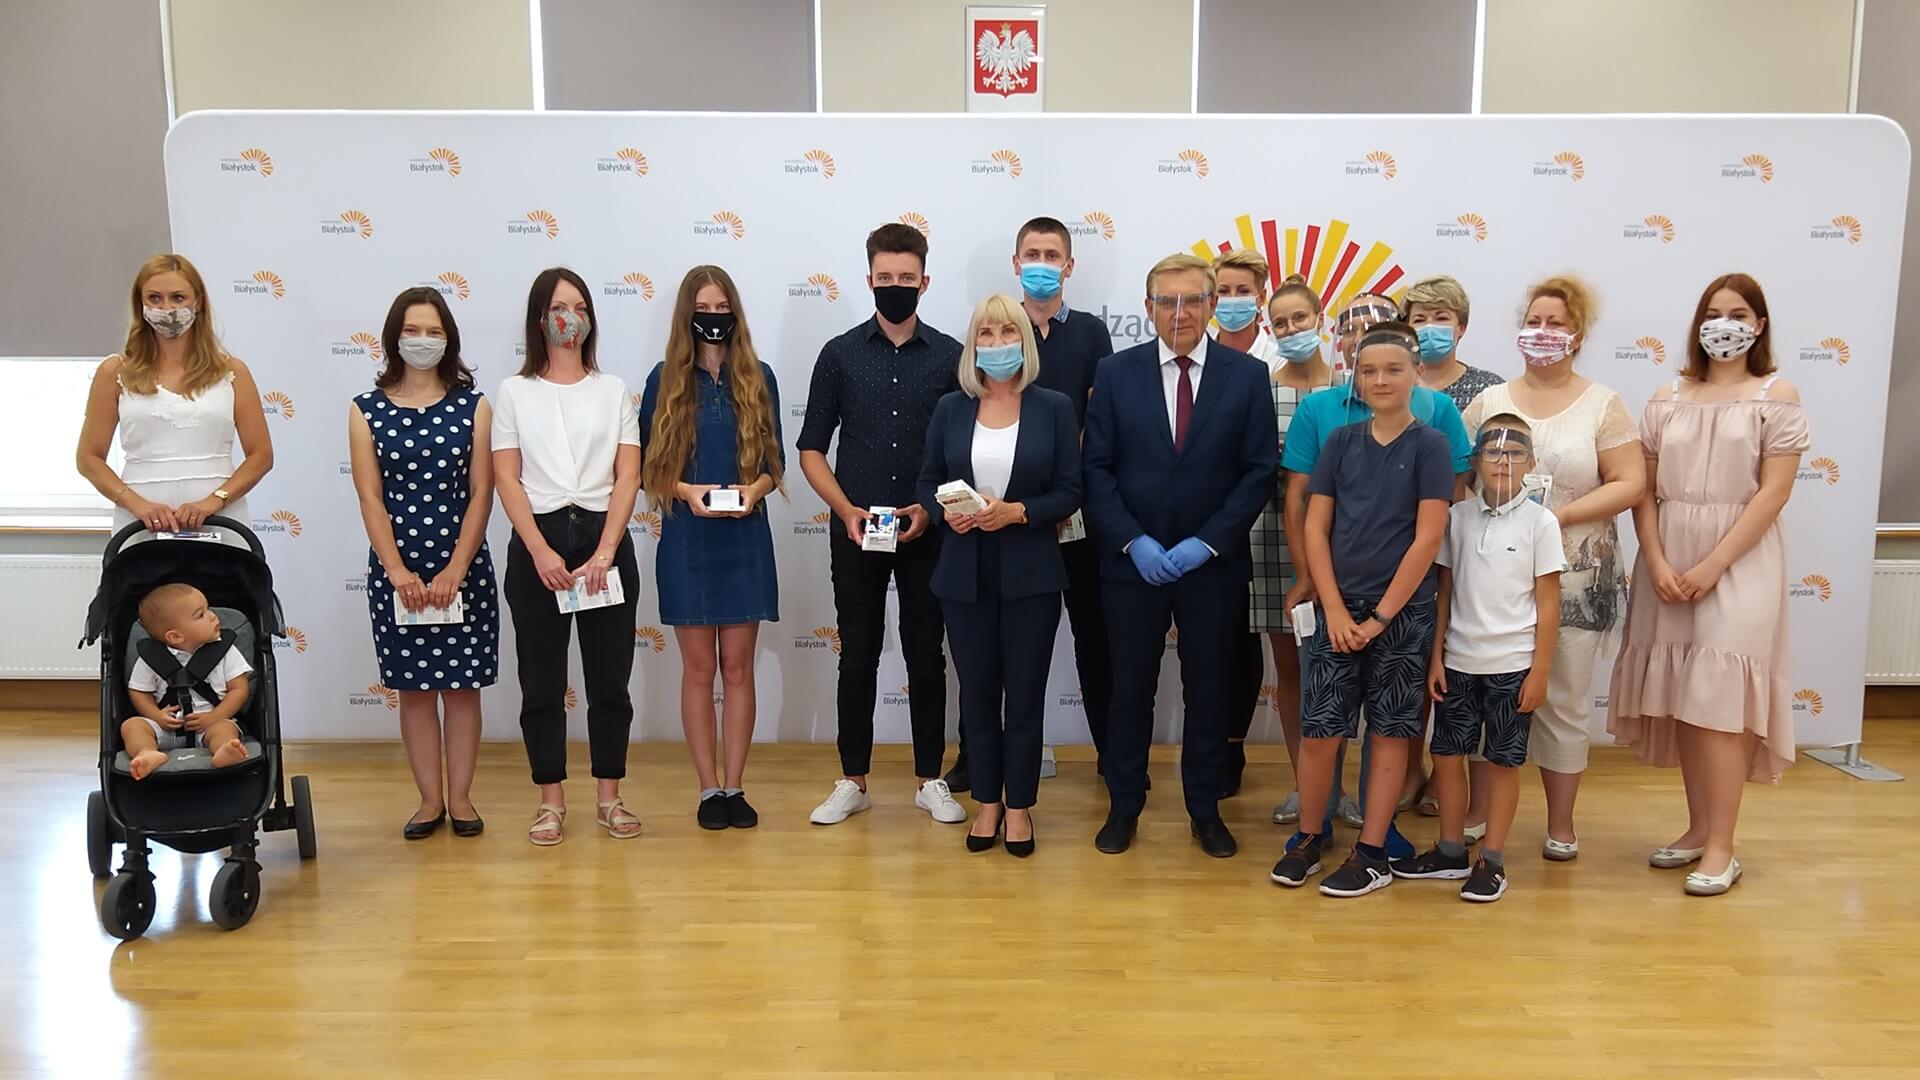 Rozstrzygnięto konkurs "12 smartfonów na 12 lipca” - mieszkańcy Białegostoku odebrali nagrody, fot. Grzegorz Pilat